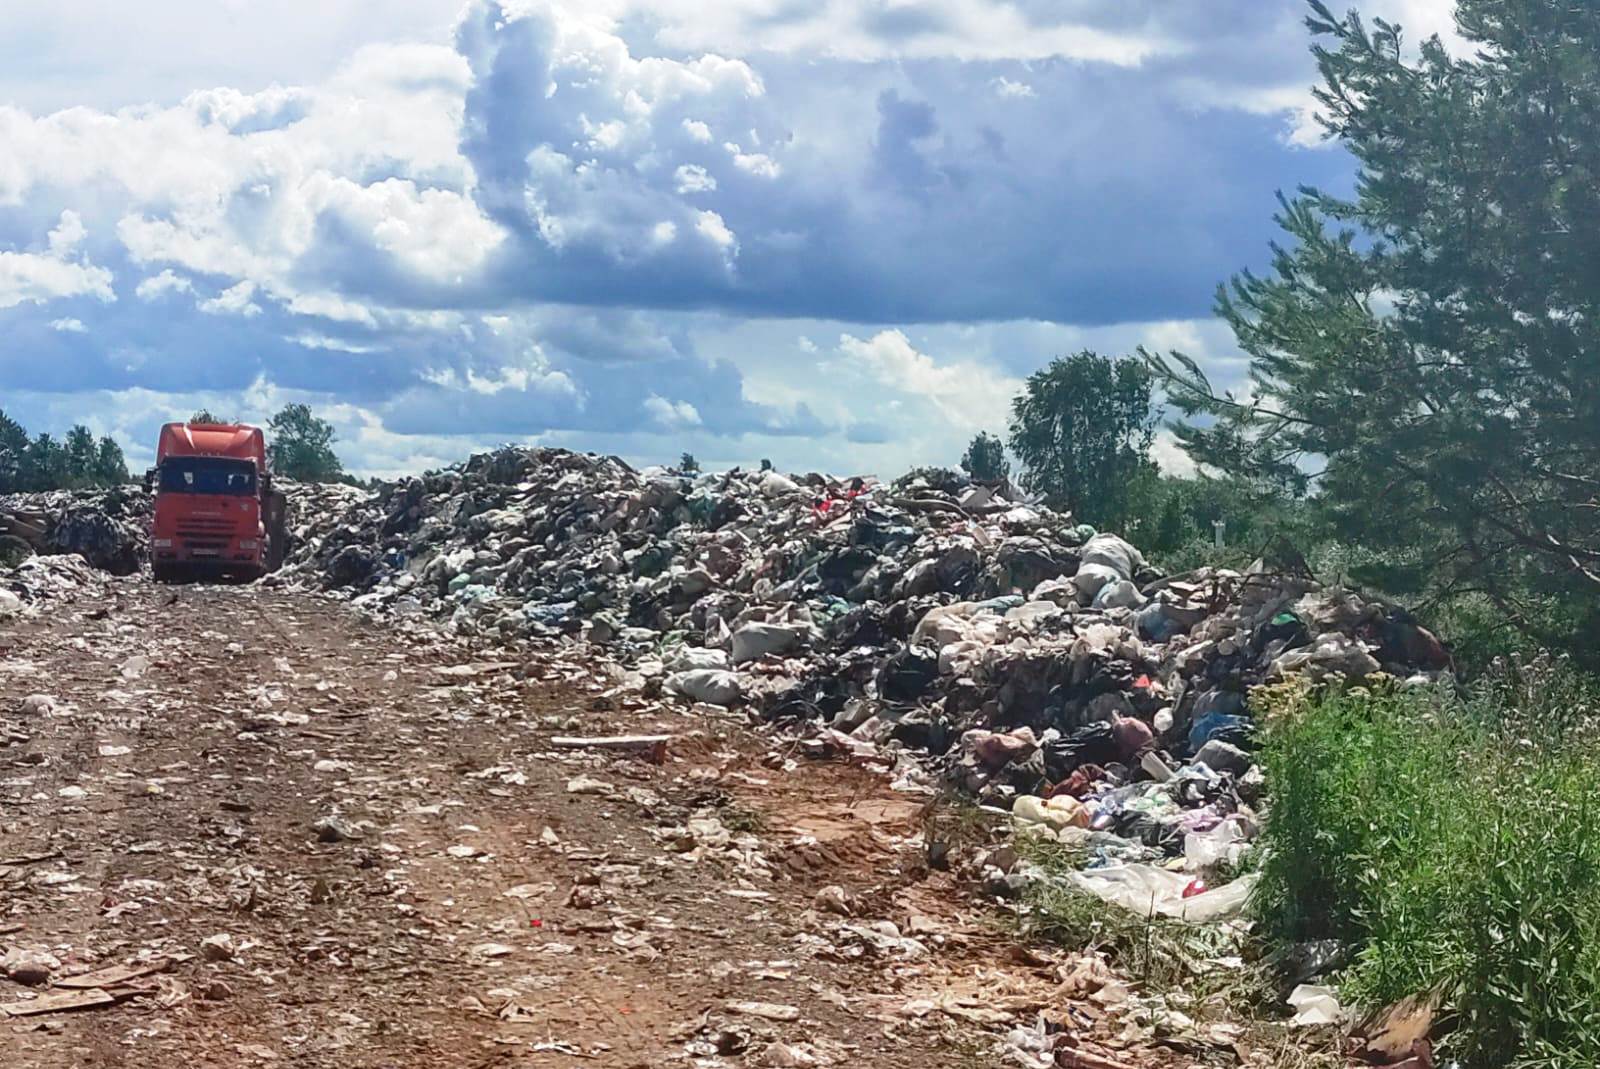 Росприроднадзор вынес предостережение по факту ненадлежащего состояния мусороперегрузочной станции в Нижегородской области